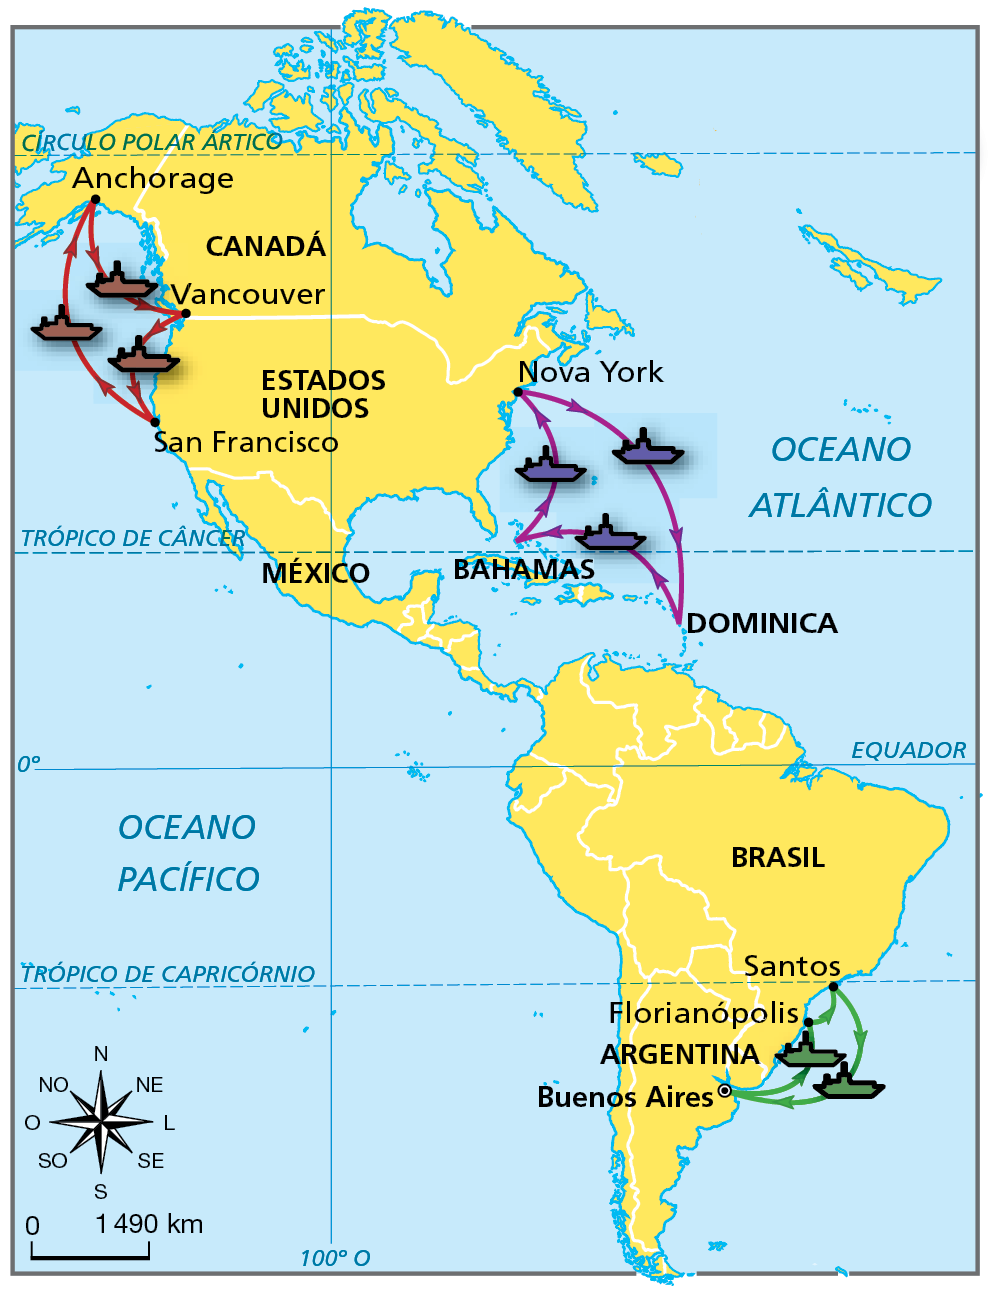 Mapa. América: rotas turísticas de navios. Destaque para rota turística de navio, representado na cor verde, entre Buenos Aires (Argentina) e Florianópolis e Santos (Brasil), cidades localizadas entre o Trópico de Capricórnio e o Círculo Polar Antártico;  rota turística de navio representado na cor roxa, entre Dominica, Bahamas (ambas localizadas entre o Trópico de Câncer e o Equador) e Nova York (nos Estados Unidos, localizada entre o Círculo Polar Ártico e o Trópico de Câncer);   rota turística de navio representado na cor marrom, entre Anchorage (Alasca, nos Estados Unidos), Vancouver (Canadá) e San Francisco (Estados Unidos), cidades localizadas entre o Círculo Polar Ártico e o Trópico de Câncer). Abaixo, escala de 0 a 1.490 quilômetros.